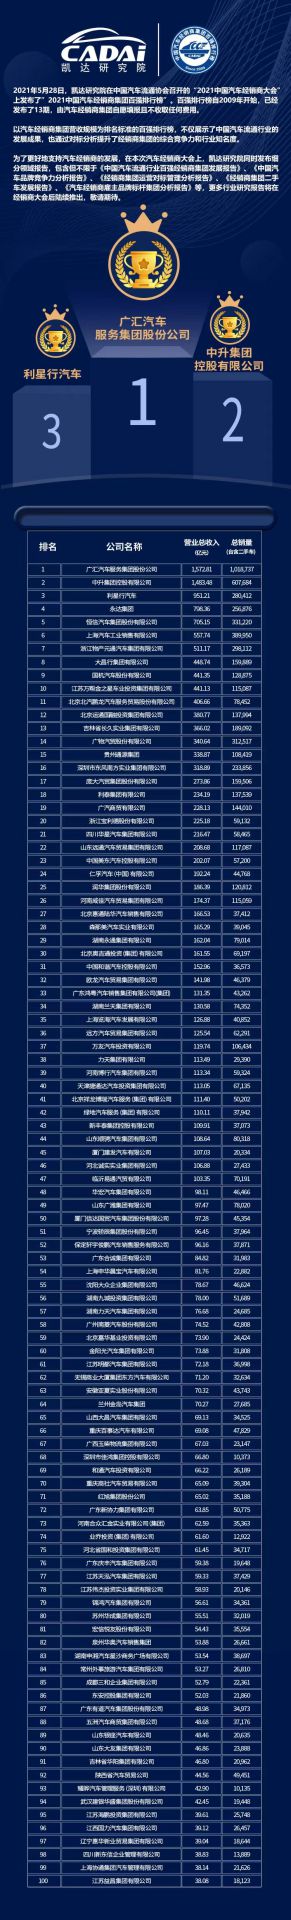 喜讯丨皇冠crown·(中国)官方网站 CrownCAD荣登2021年中国汽车经销商百强排行榜第33位(图3)